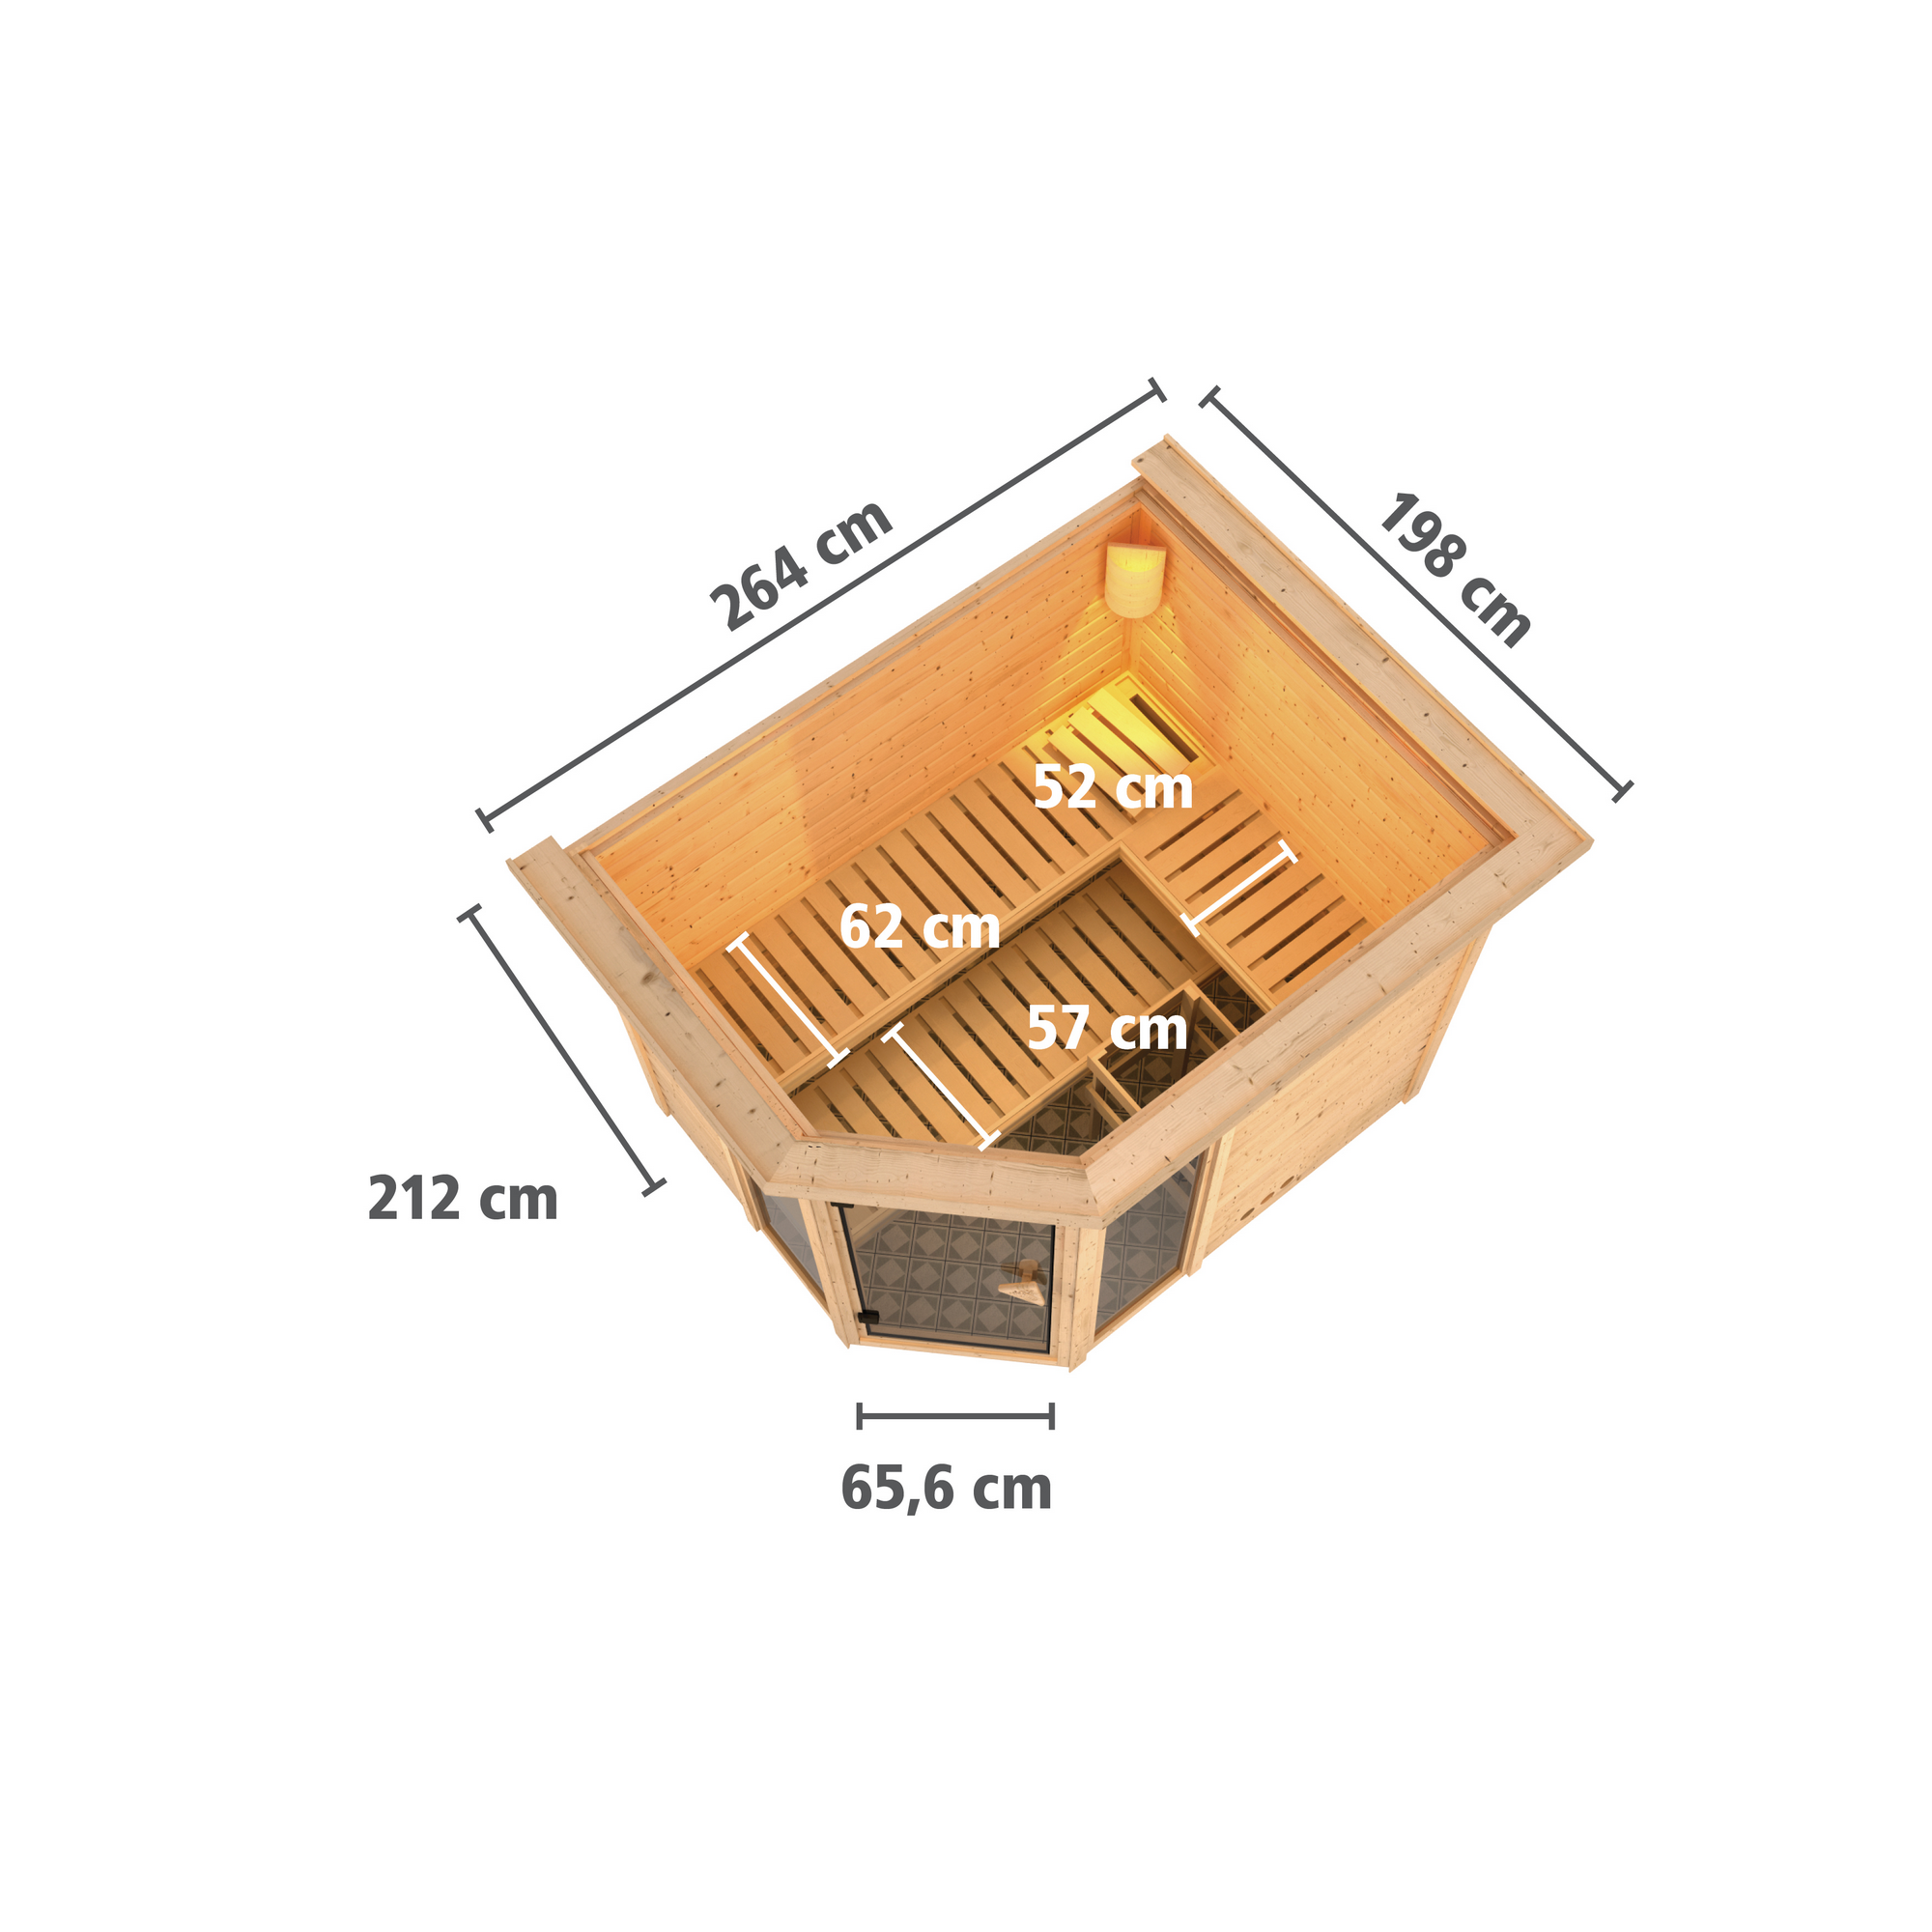 Massivholzsauna 'Sinai 3' mit Ofen und Dachkranz natur 264 x 212 x 198 cm, 9 kW + product picture